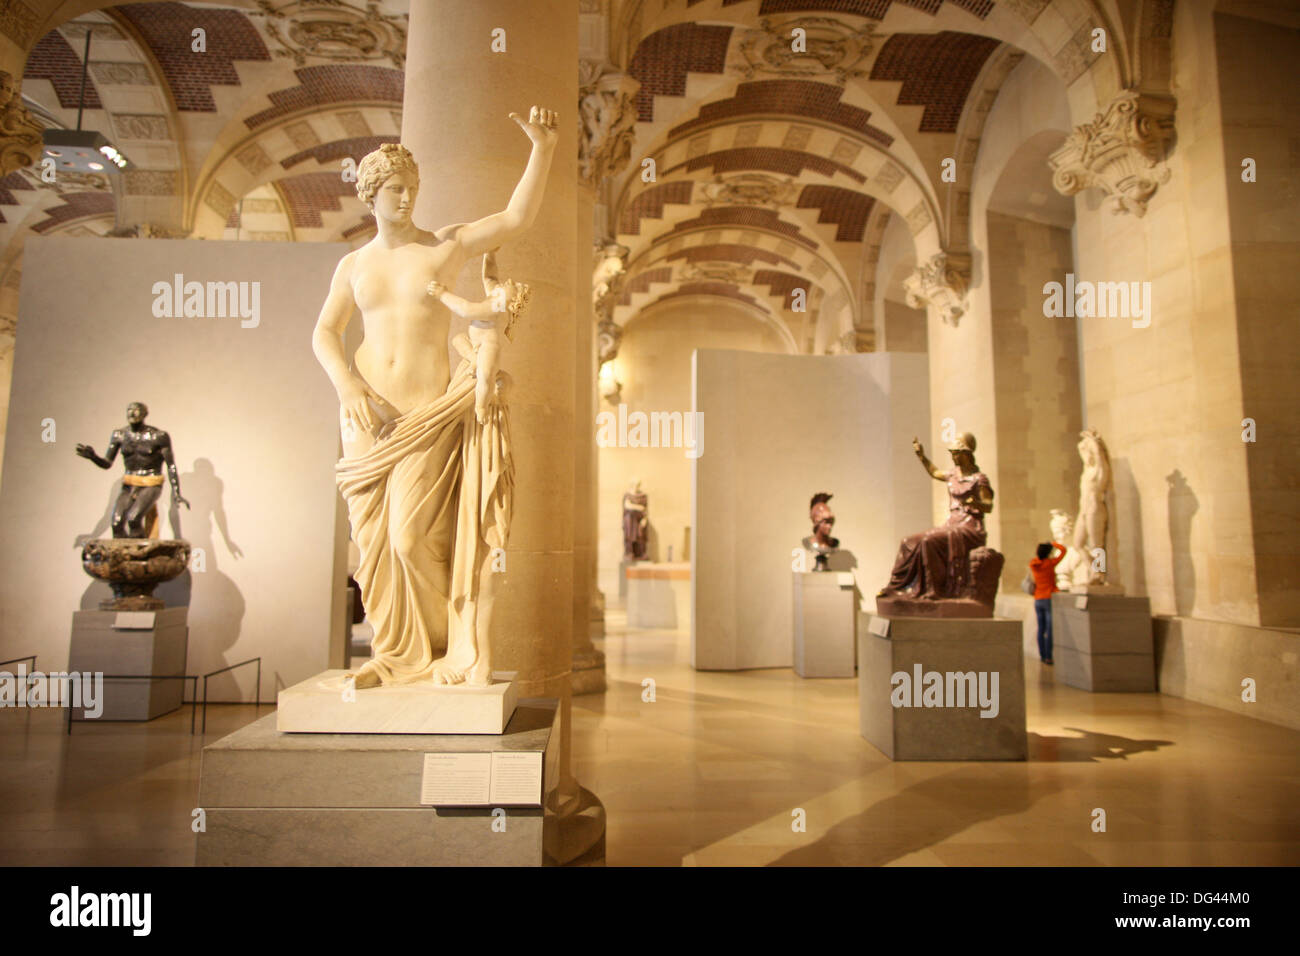 Greek sculptures, Salle du Manege, Louvre Museum, Paris, France, Europe Stock Photo